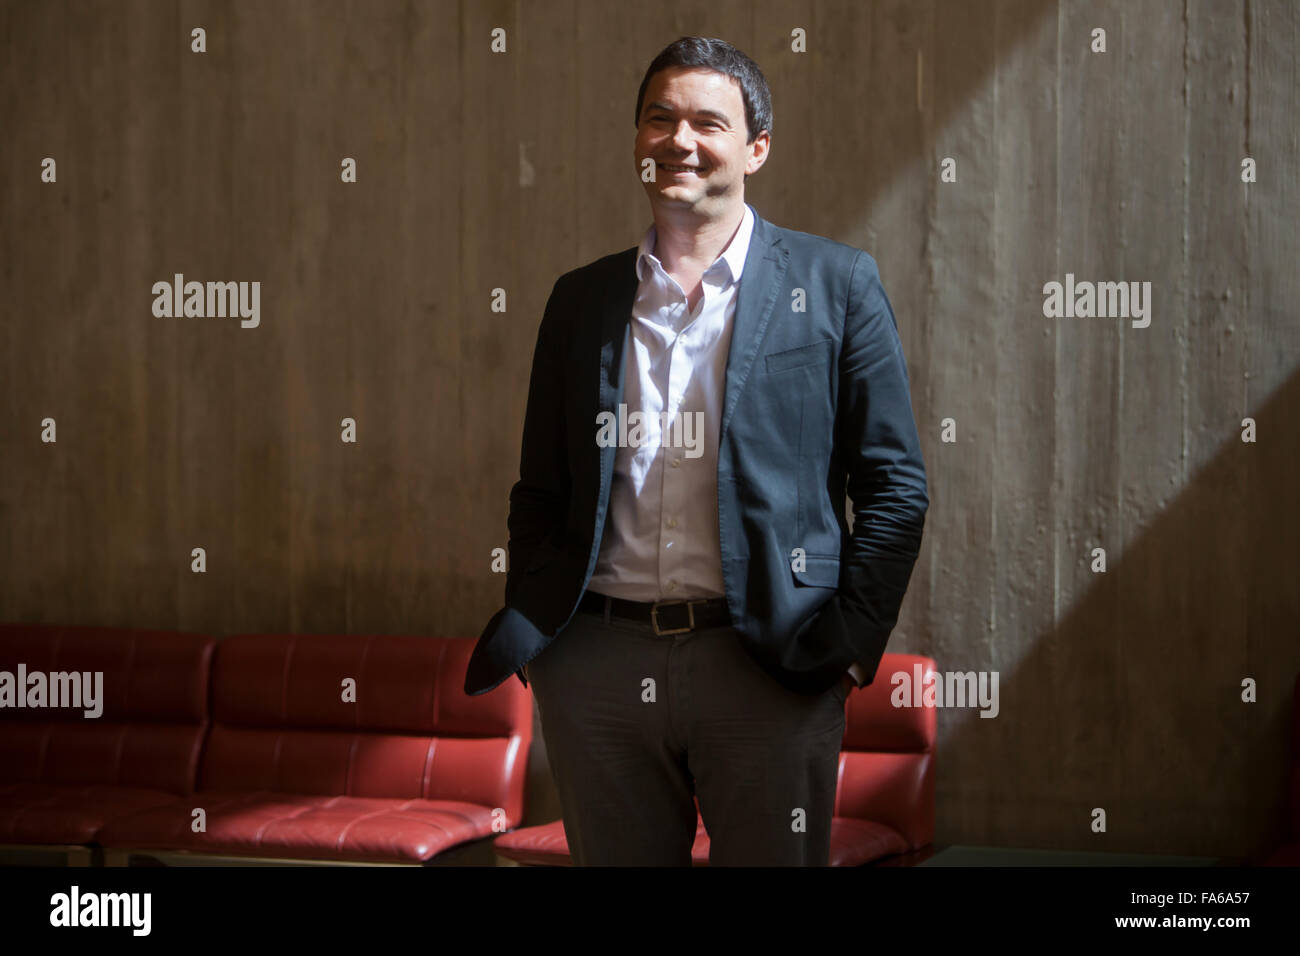 Thomas Piketty, économiste français qui travaille sur la richesse et l'inégalité des revenus, sur une visite au Portugal. Banque D'Images